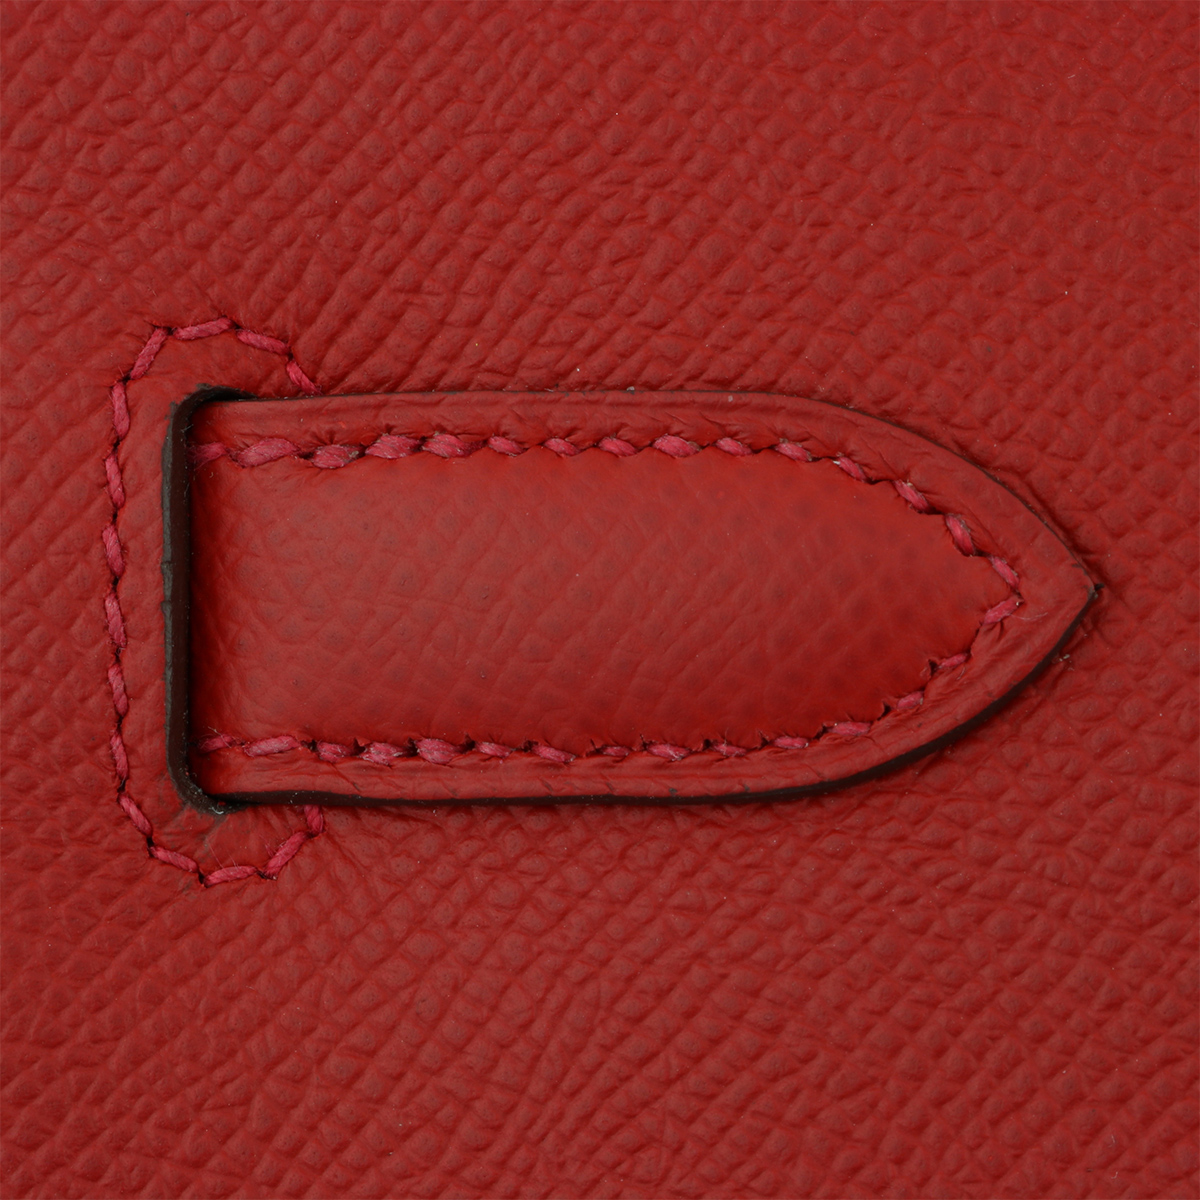 Hermès Birkin 30 Rouge Casaque Epsom Palladium Hardware PHW — The